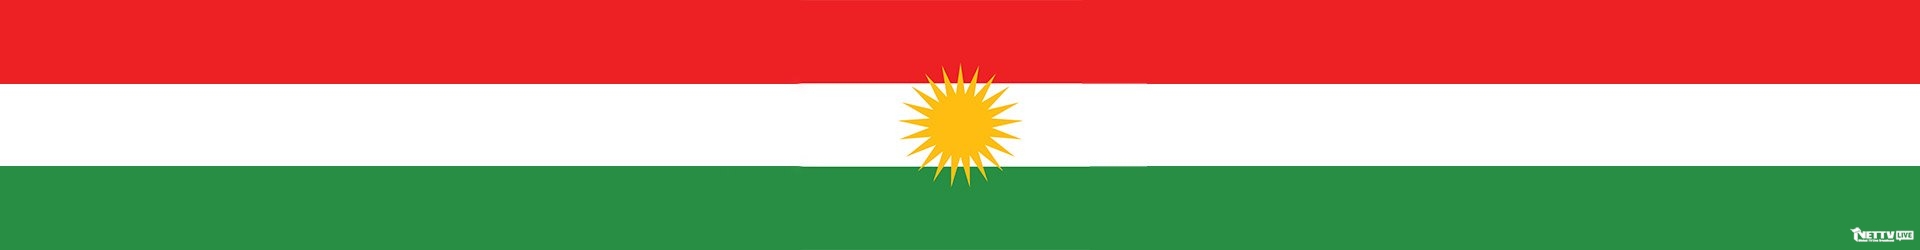 库尔德斯坦